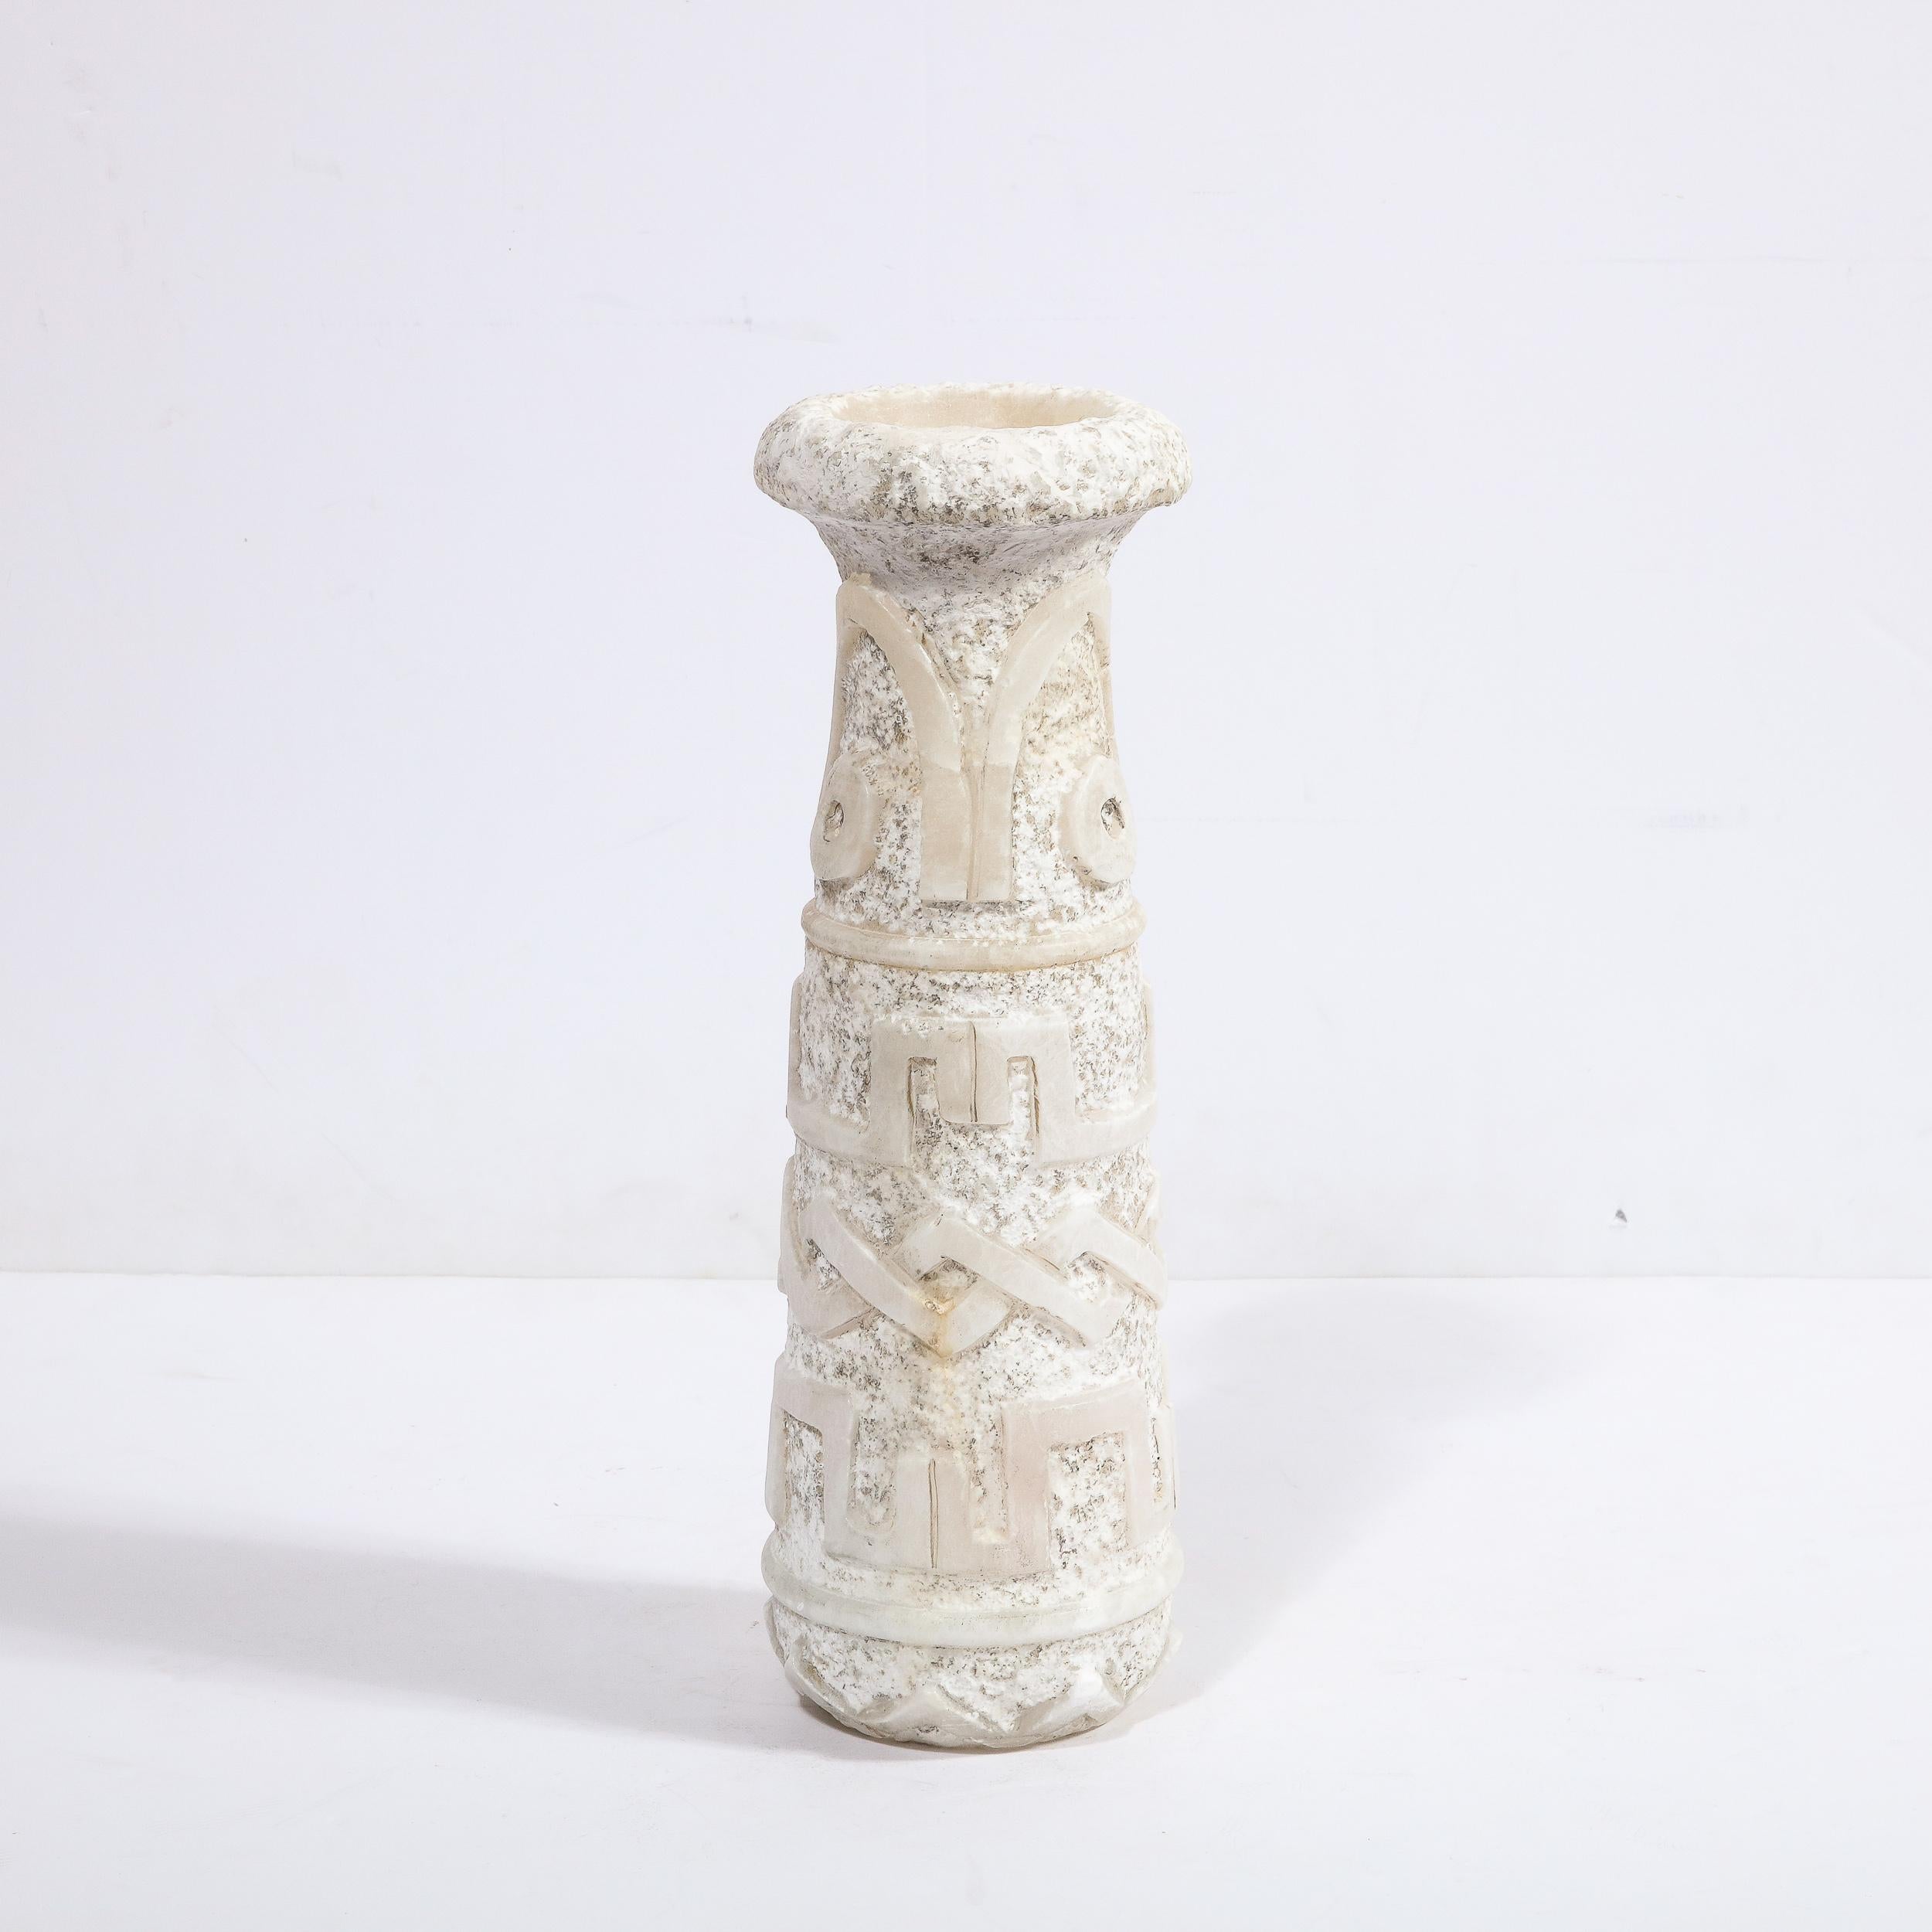 Diese raffinierte primitivistische Vase aus der Mitte des Jahrhunderts wurde um 1950 in Frankreich hergestellt. Der zylindrische Korpus verjüngt sich nach oben hin und hat eine ausladende Öffnung, die über den Korpus hinausragt - in einem